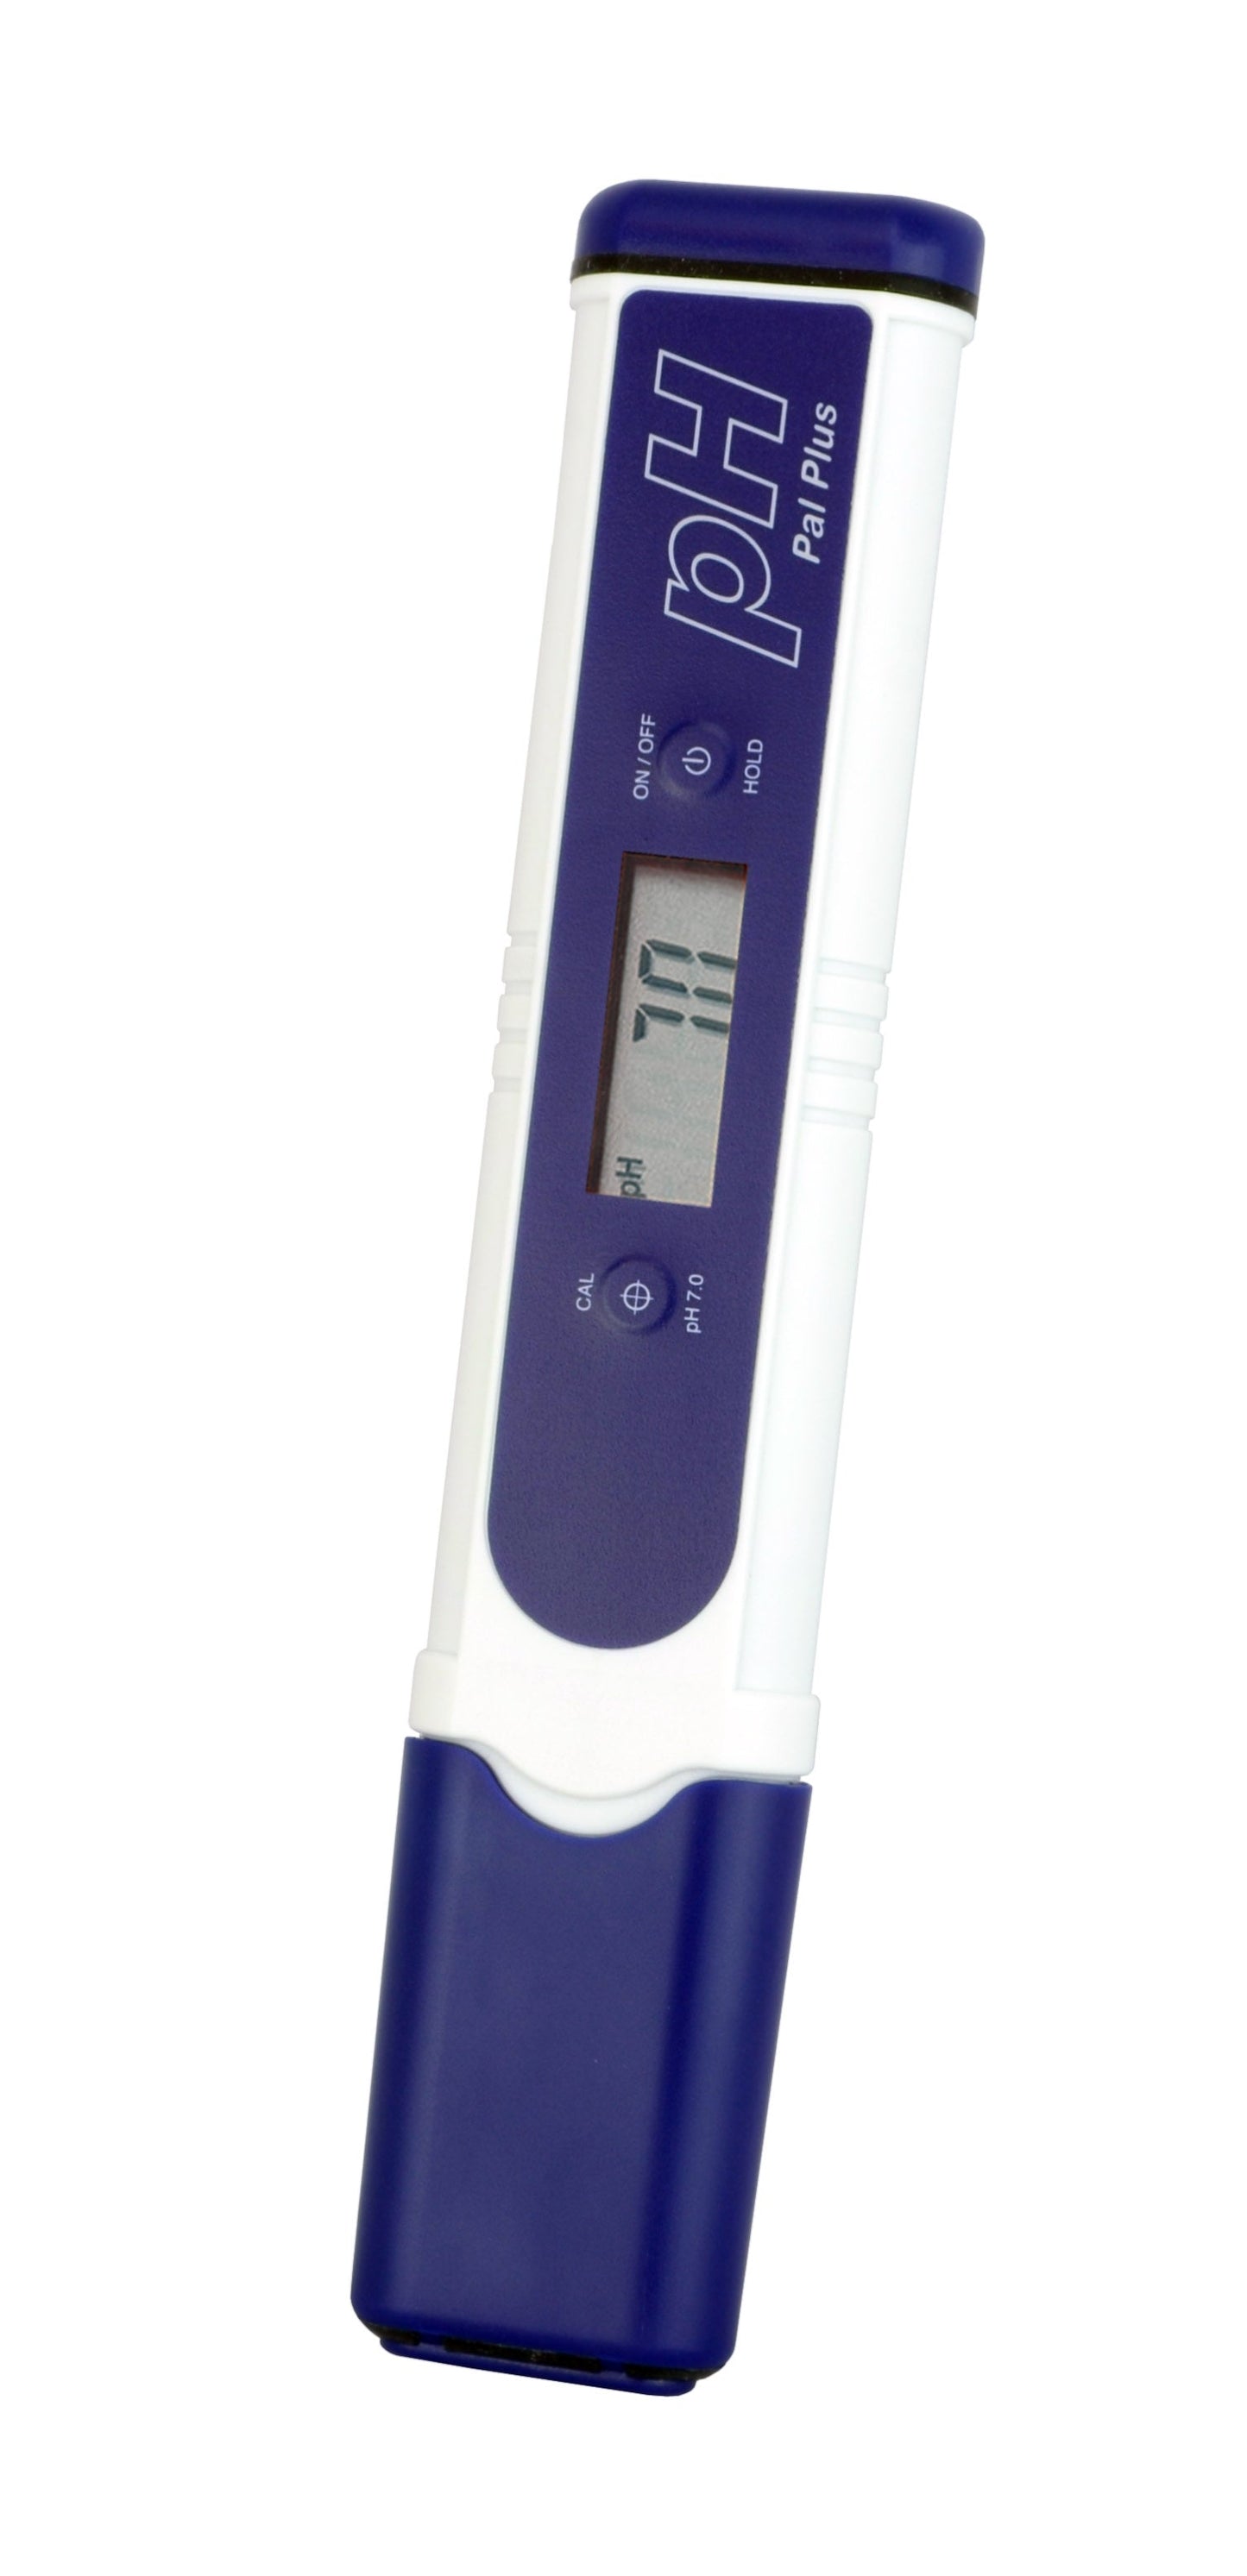 un Testeur de pH PAL Plus bleu et blanc de Thermometre.fr sur fond blanc.